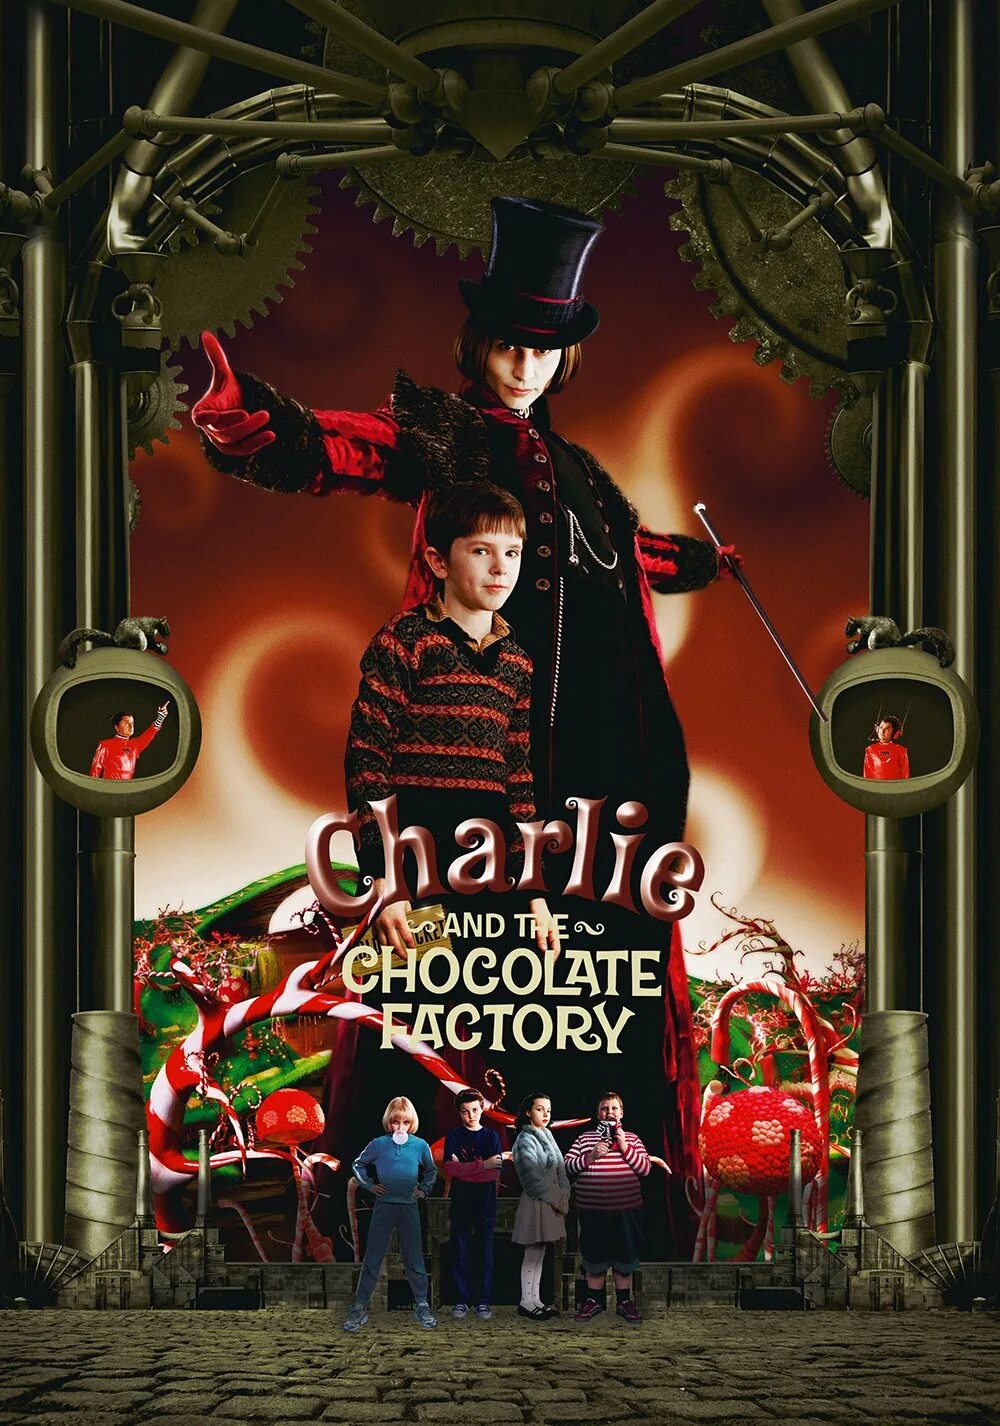 Сколько чарли шоколадная фабрика. Чарли и шоколадная фабрика 2005. Charlie and the Chocolate Factory 2005 poster. Тим Бертон Чарли и шоколадная фабрика.